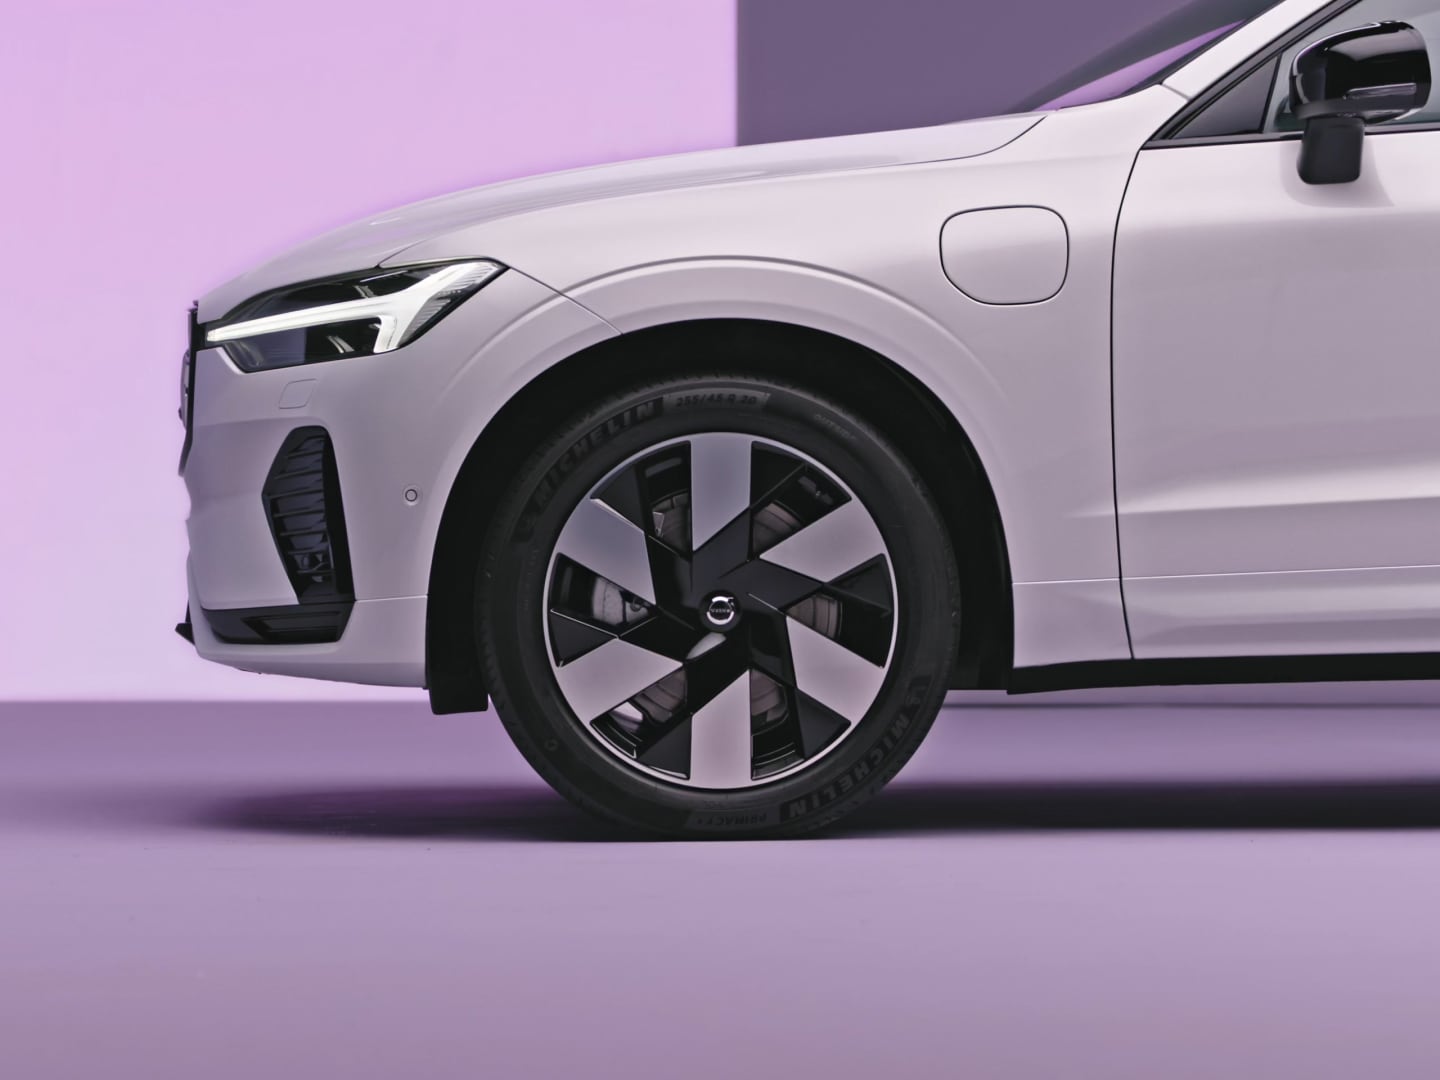 Sidovy av en Volvo XC60 laddhybrid som visar bilens hjul och front.